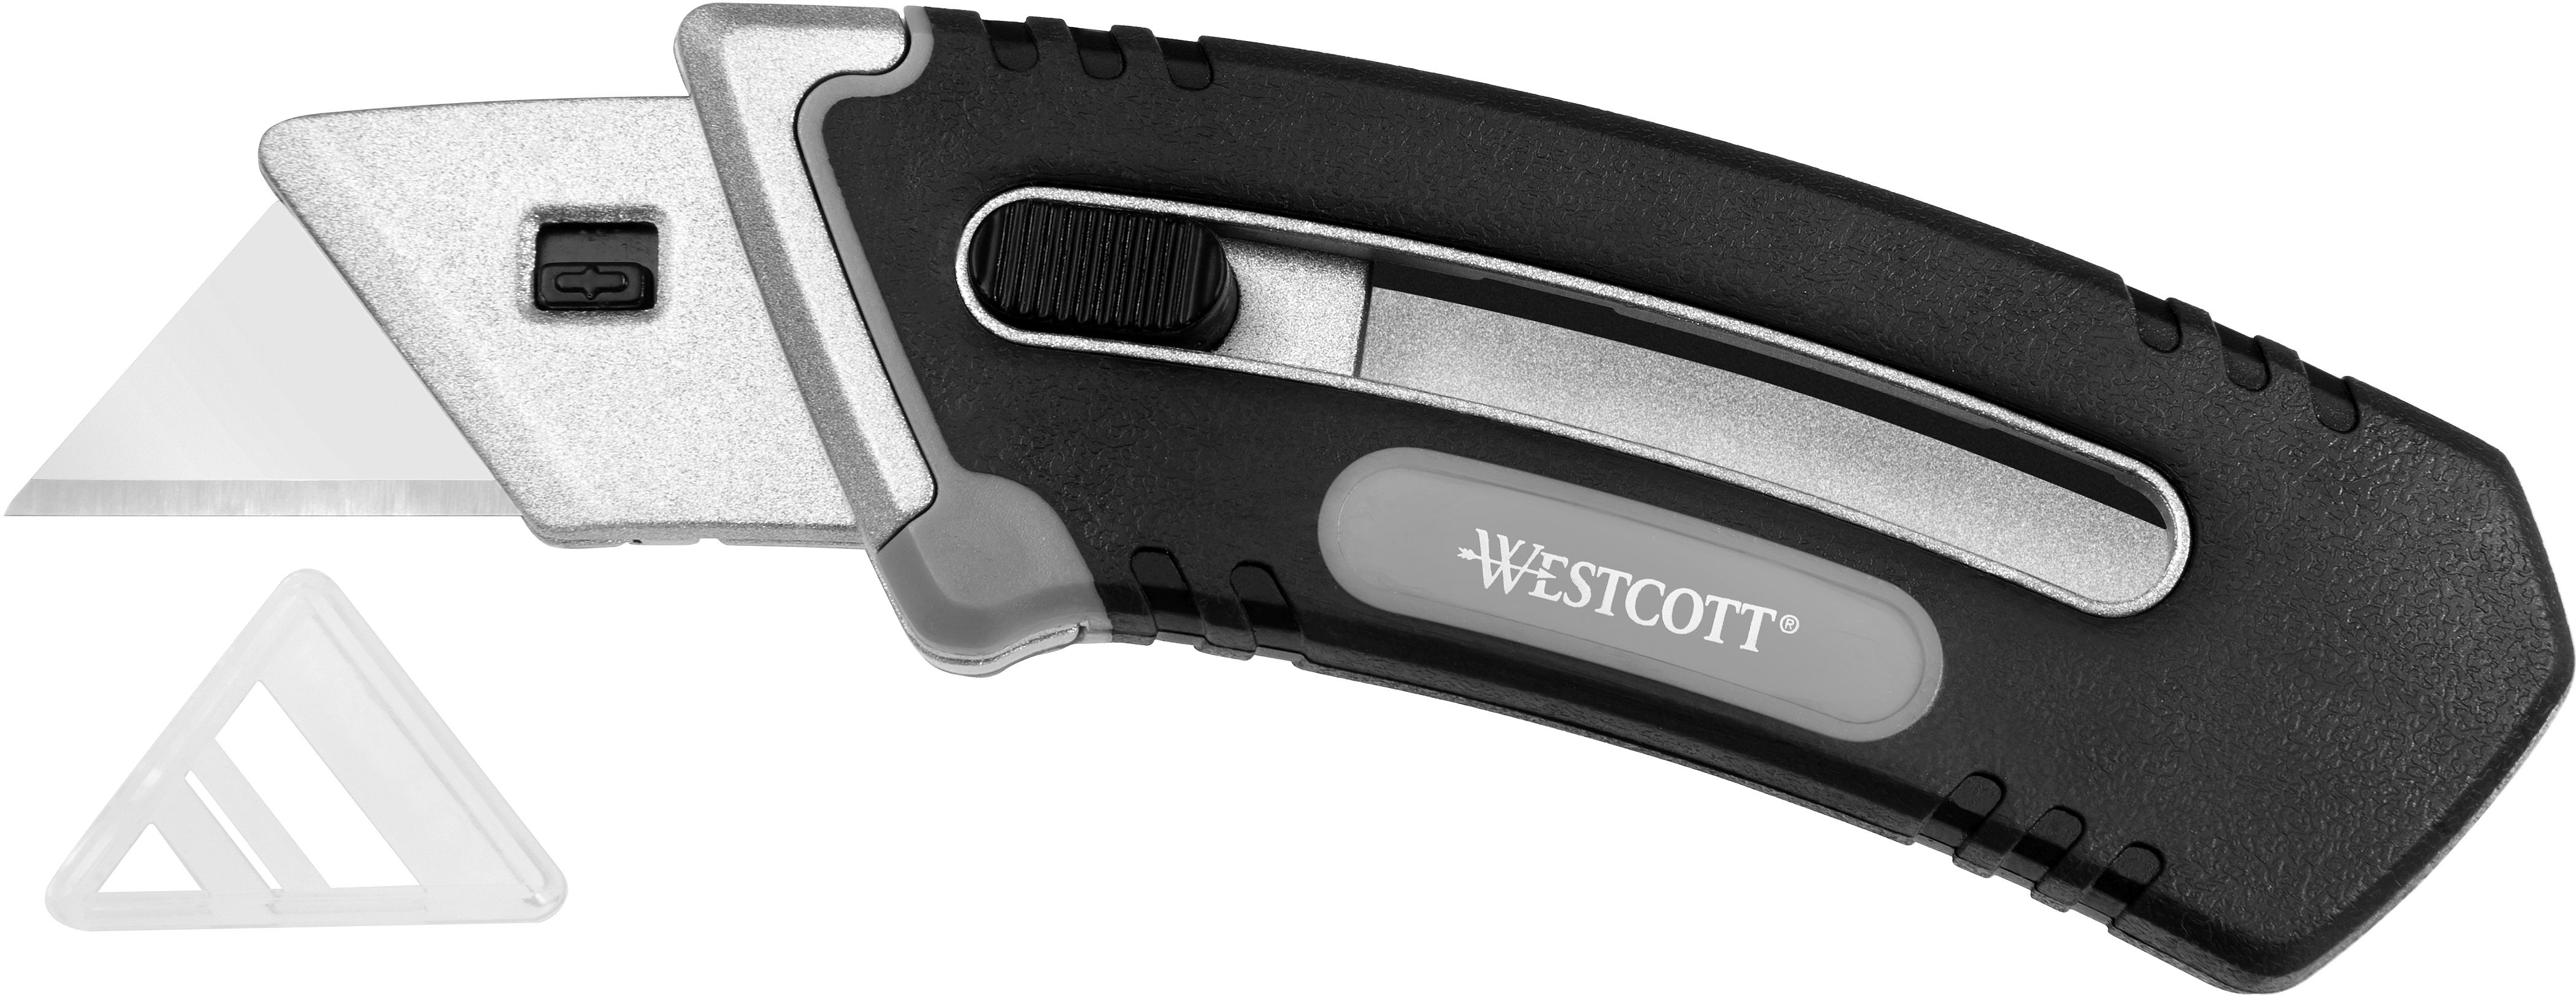 WESTCOTT Cutter Collapsible Utility E-84029 00 noir/argent